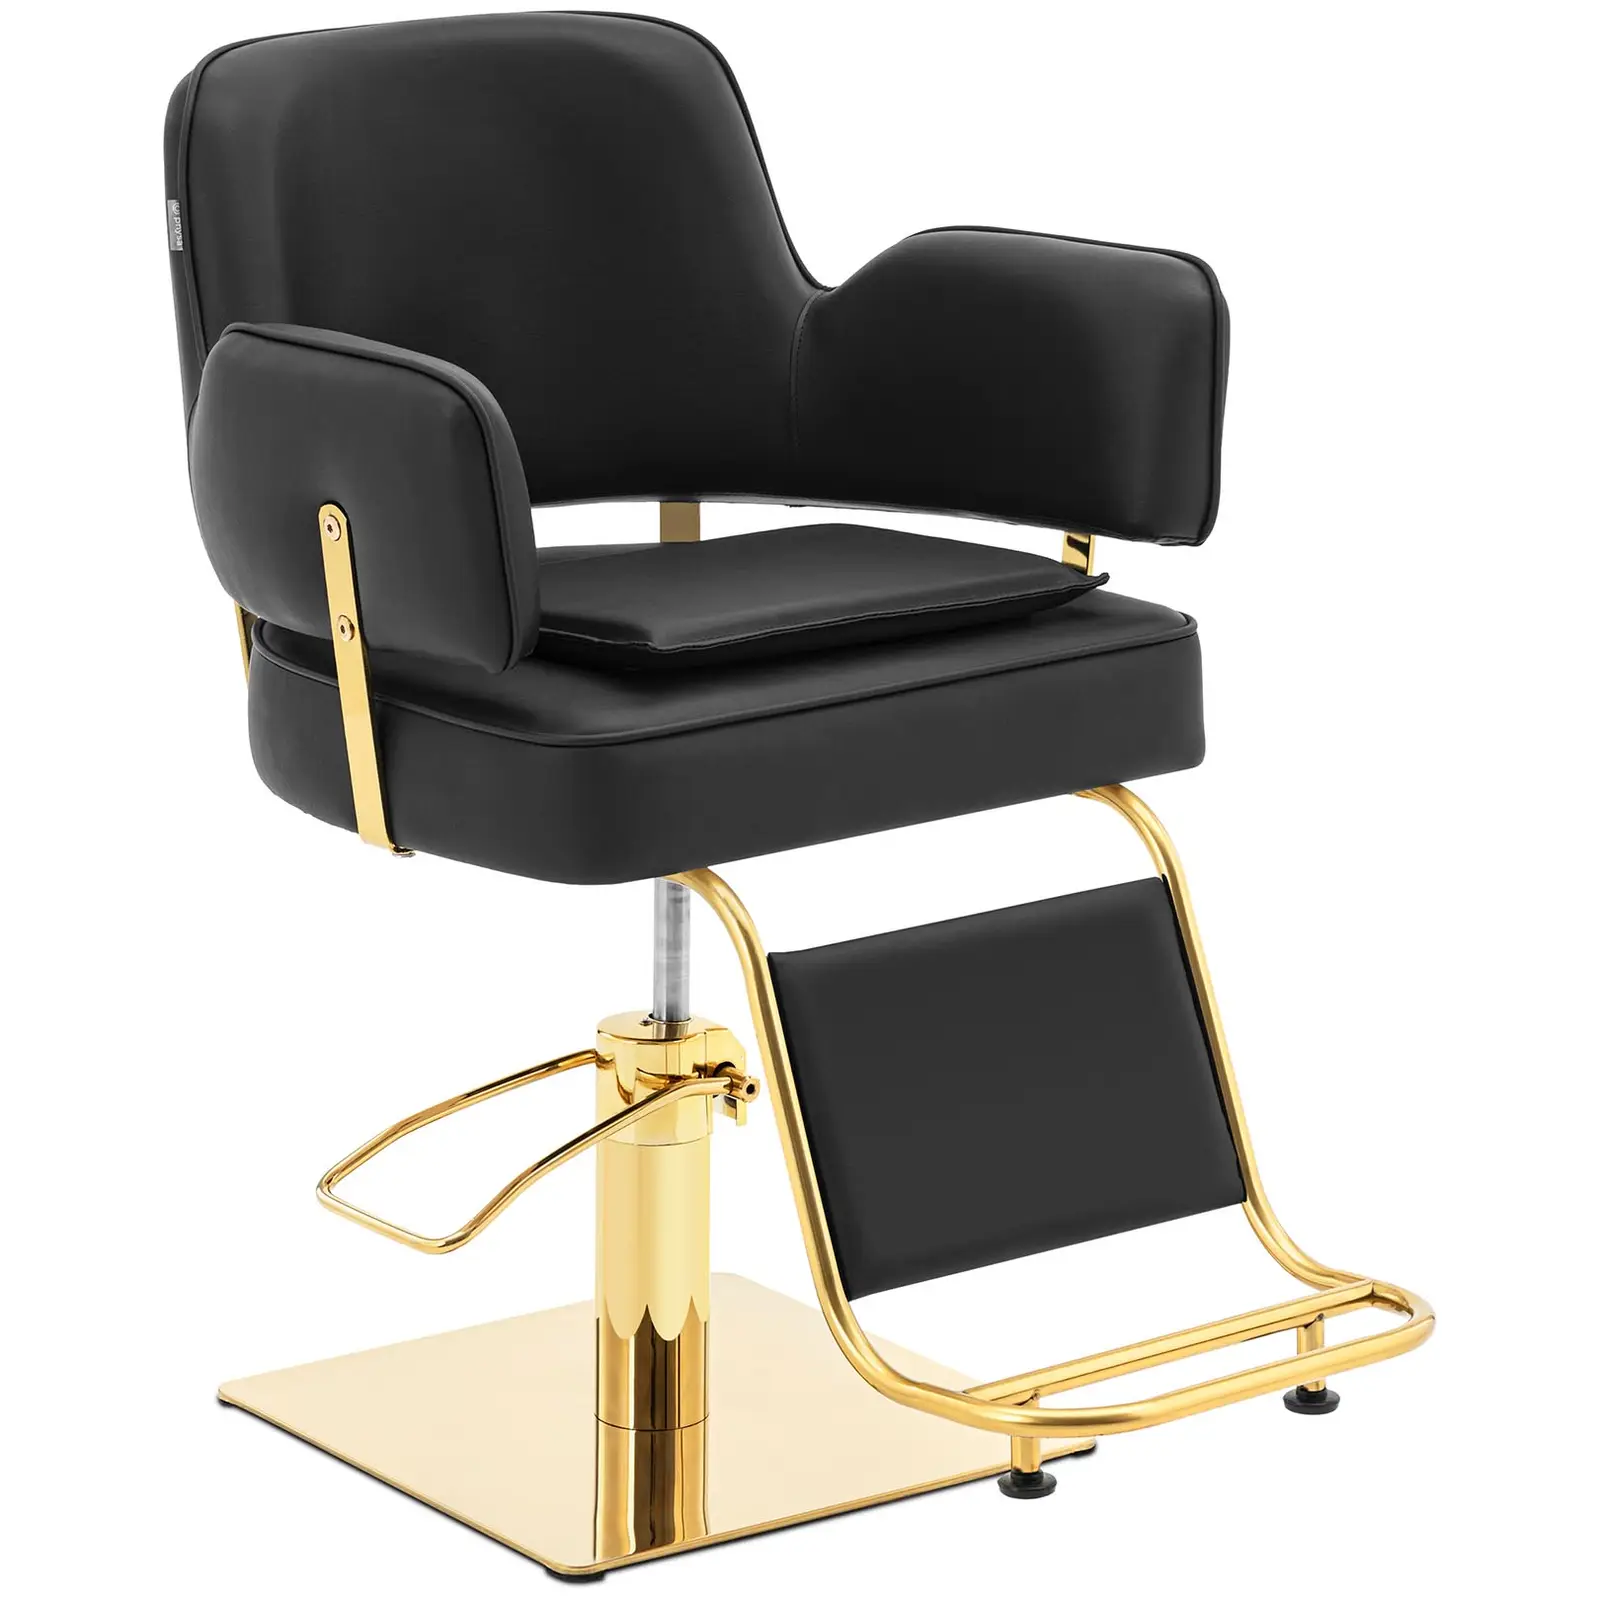 Salono kėdė su atramomis kojoms - 890 - 1020 mm - 200 kg - juoda / auksinė